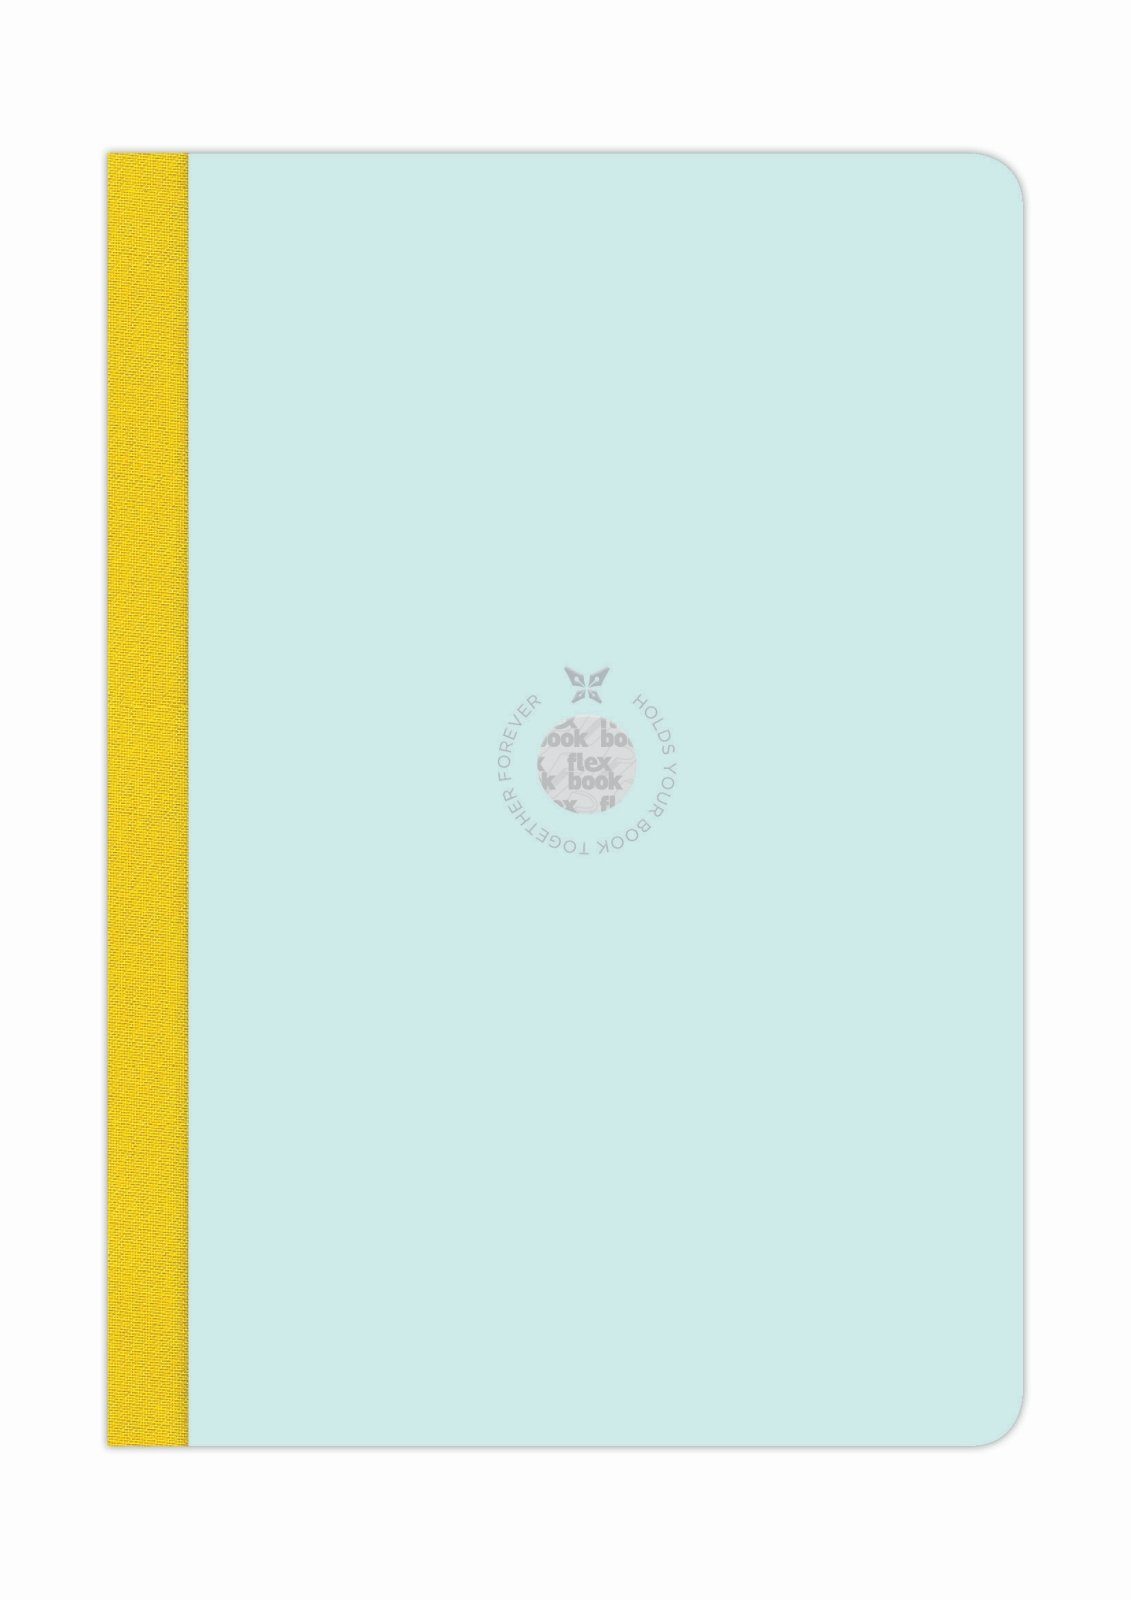 Flexbook Notizbuch Flexbook Smartbook Liniert 160 Seiten Ökopapiereinband viele Größen/Fa Hellblau-Grün 17*24cm